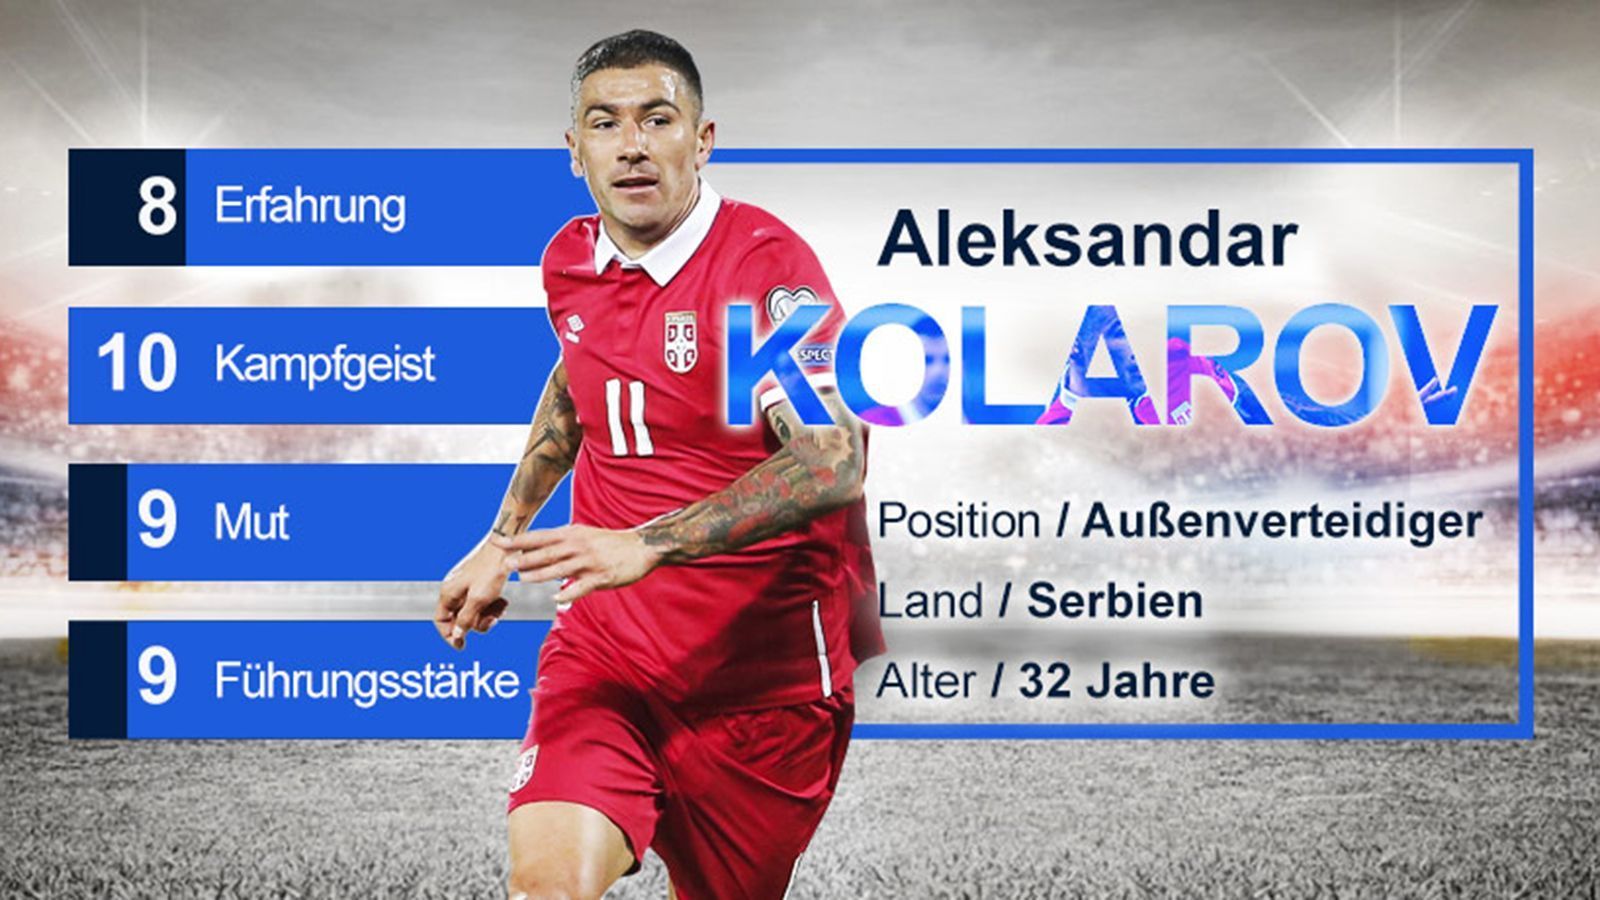 
                <strong>Aleksandar Kolarov (Serbien) - Gruppe E</strong><br>
                Aleksandar Kolarov wurde erst im März zum Kapitän benannt. Er hat 74 Länderspiele für Serbien und fast 50 Champions-League-Spiele für Lazio, Manchester City und die AS Roma absolviert. Der Linksfuß ist für seinen Einsatz und Kampfgeist bekannt – Eigenschaften, mit denen er vorangeht und seine Mitspieler mitreißt. Zudem ist der schussgewaltige Standard-Experte immer wieder für wichtige Tore gut.
              